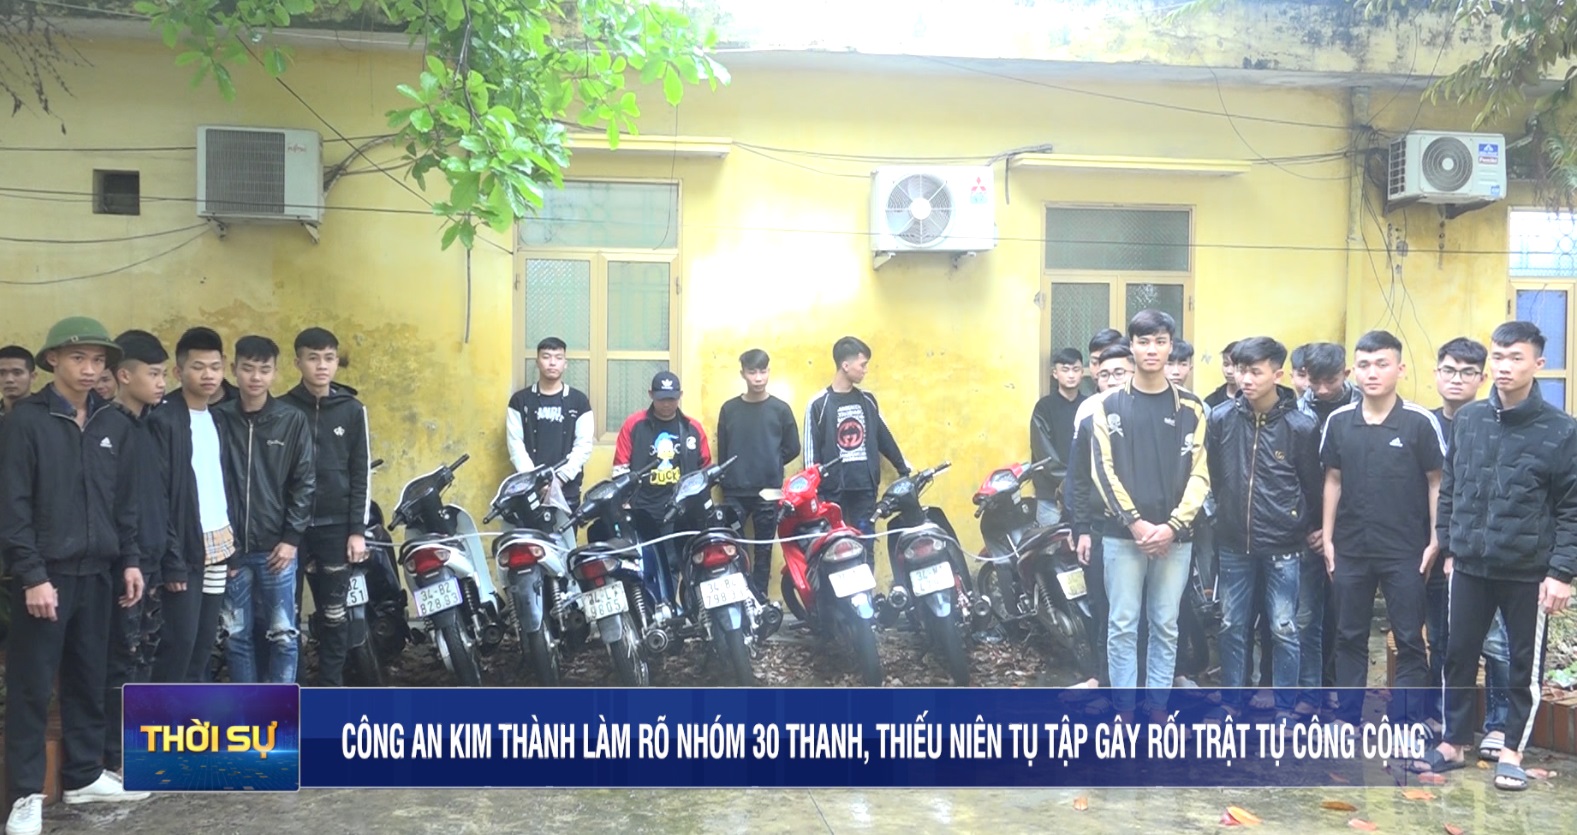 Công an huyện Kim Thành làm rõ nhóm 30 thanh, thiếu niên tụ tập gây rối trật tự công cộng